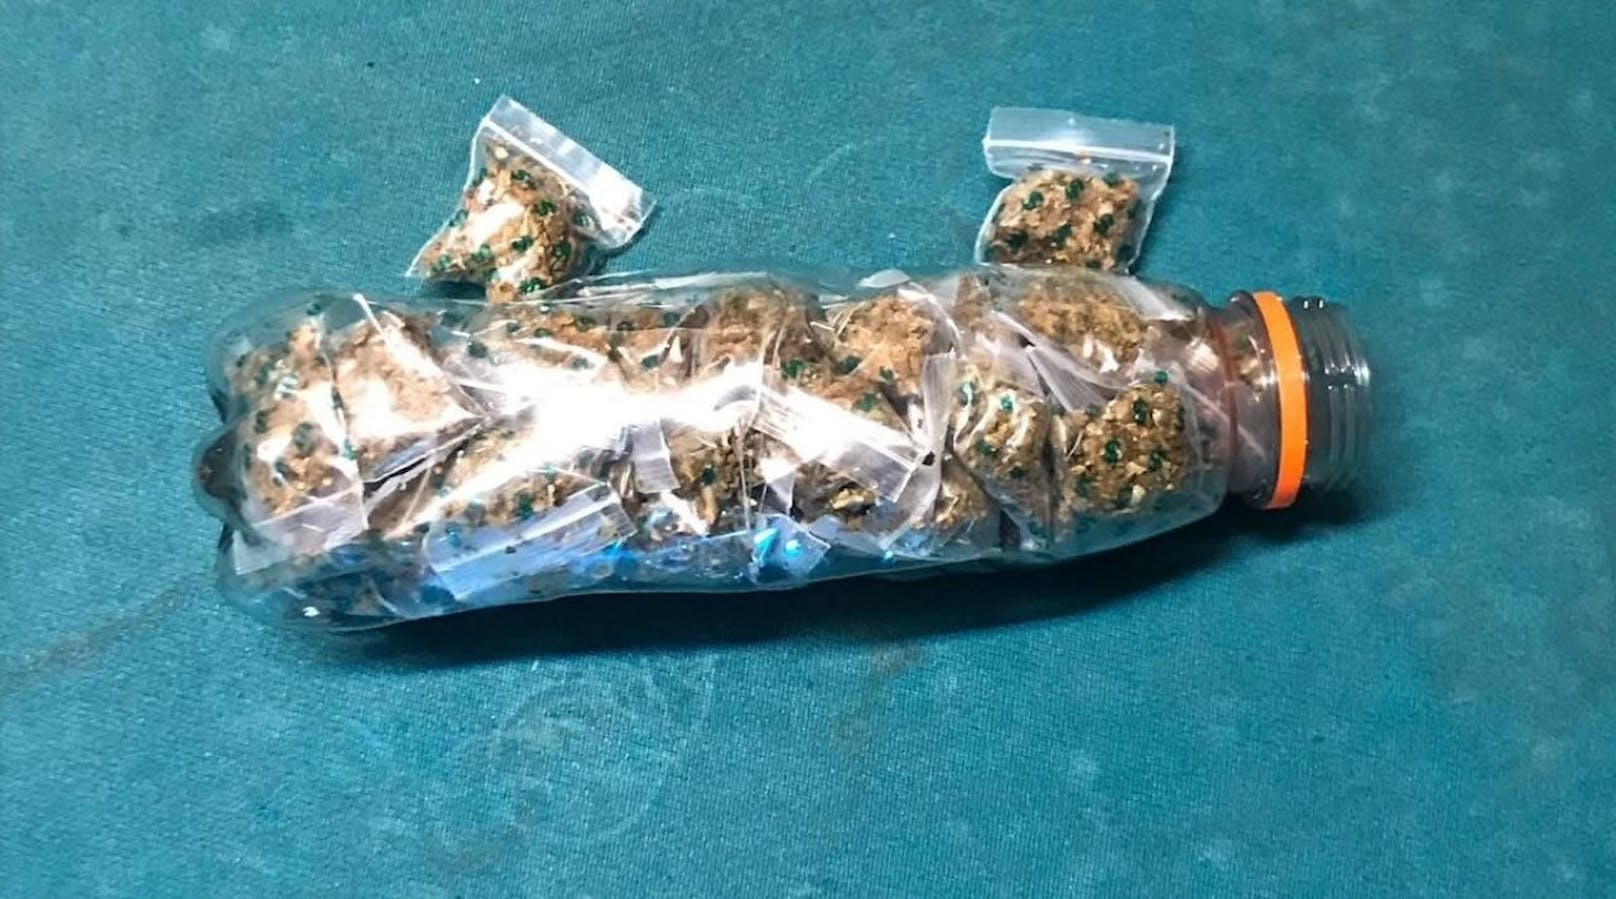 In der sichergestellten PET-Flasche fanden die Polizisten 44 Baggies, die mit Cannabiskraut gefüllt waren. (c) LPD Wien